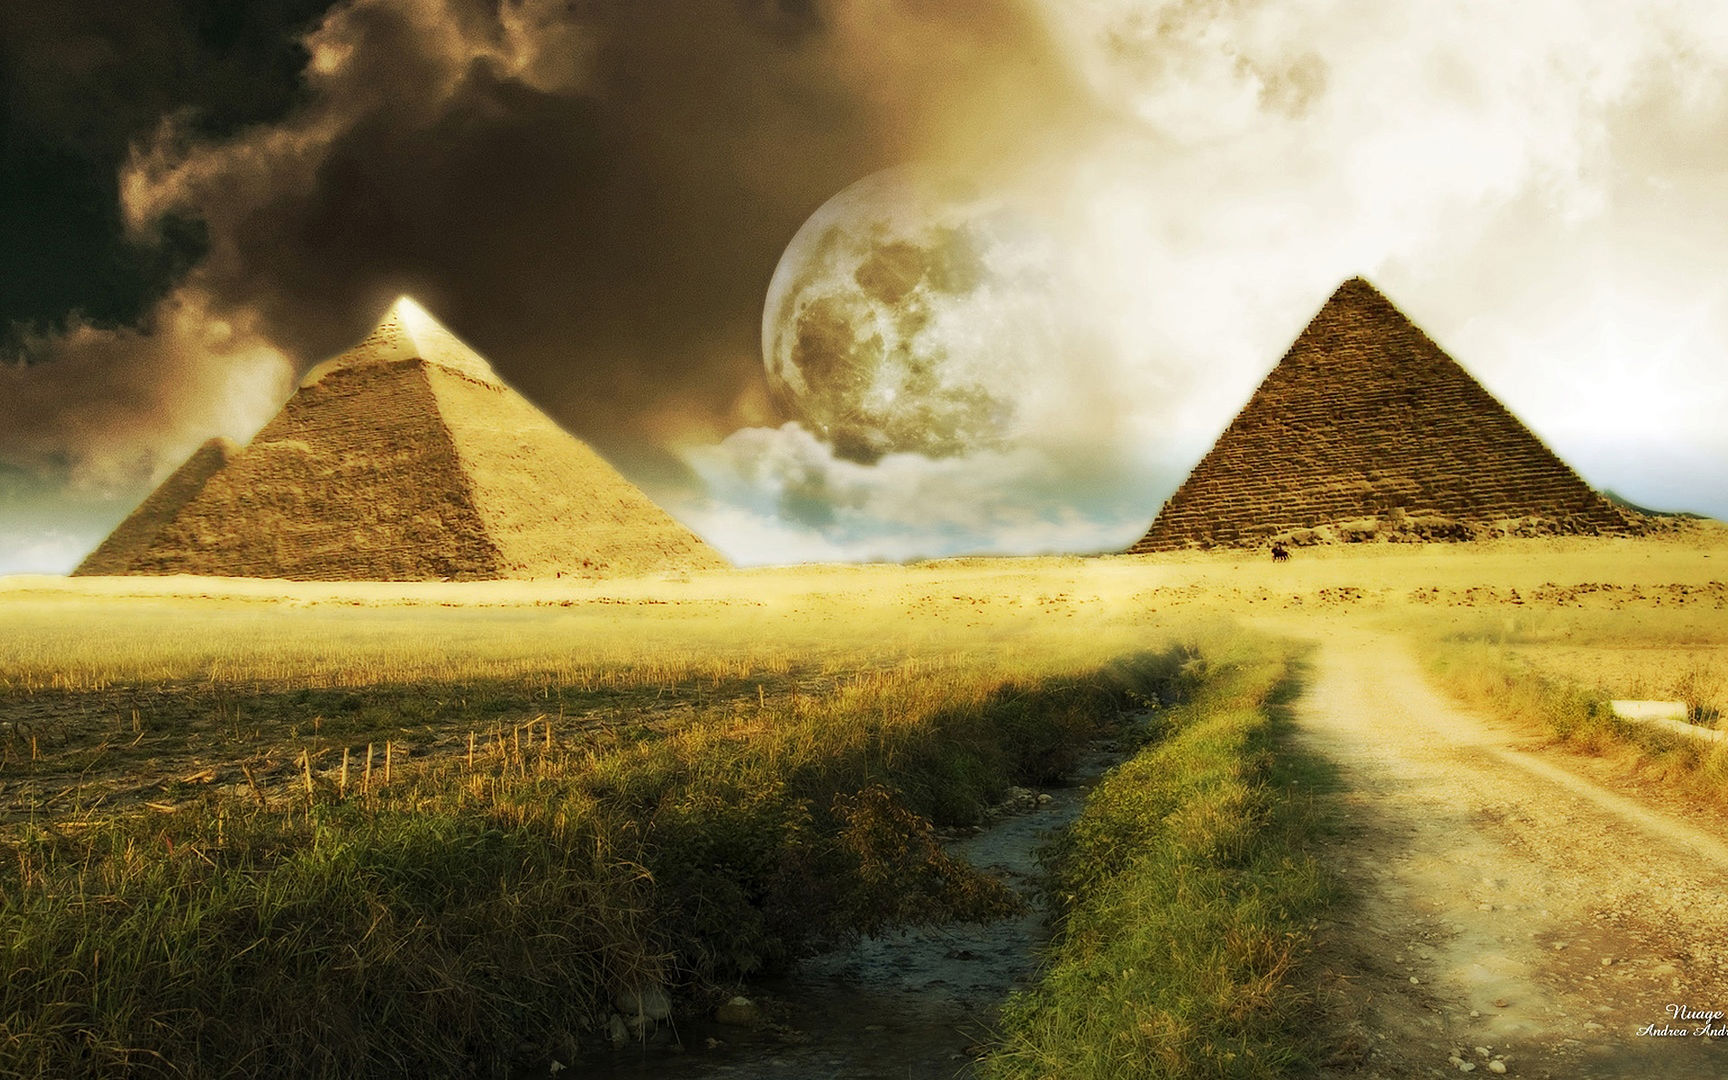 صور وخلفيات لأهرامات الجيزة وأبو الهول Pyramids of Giza and the Sphinx 2310